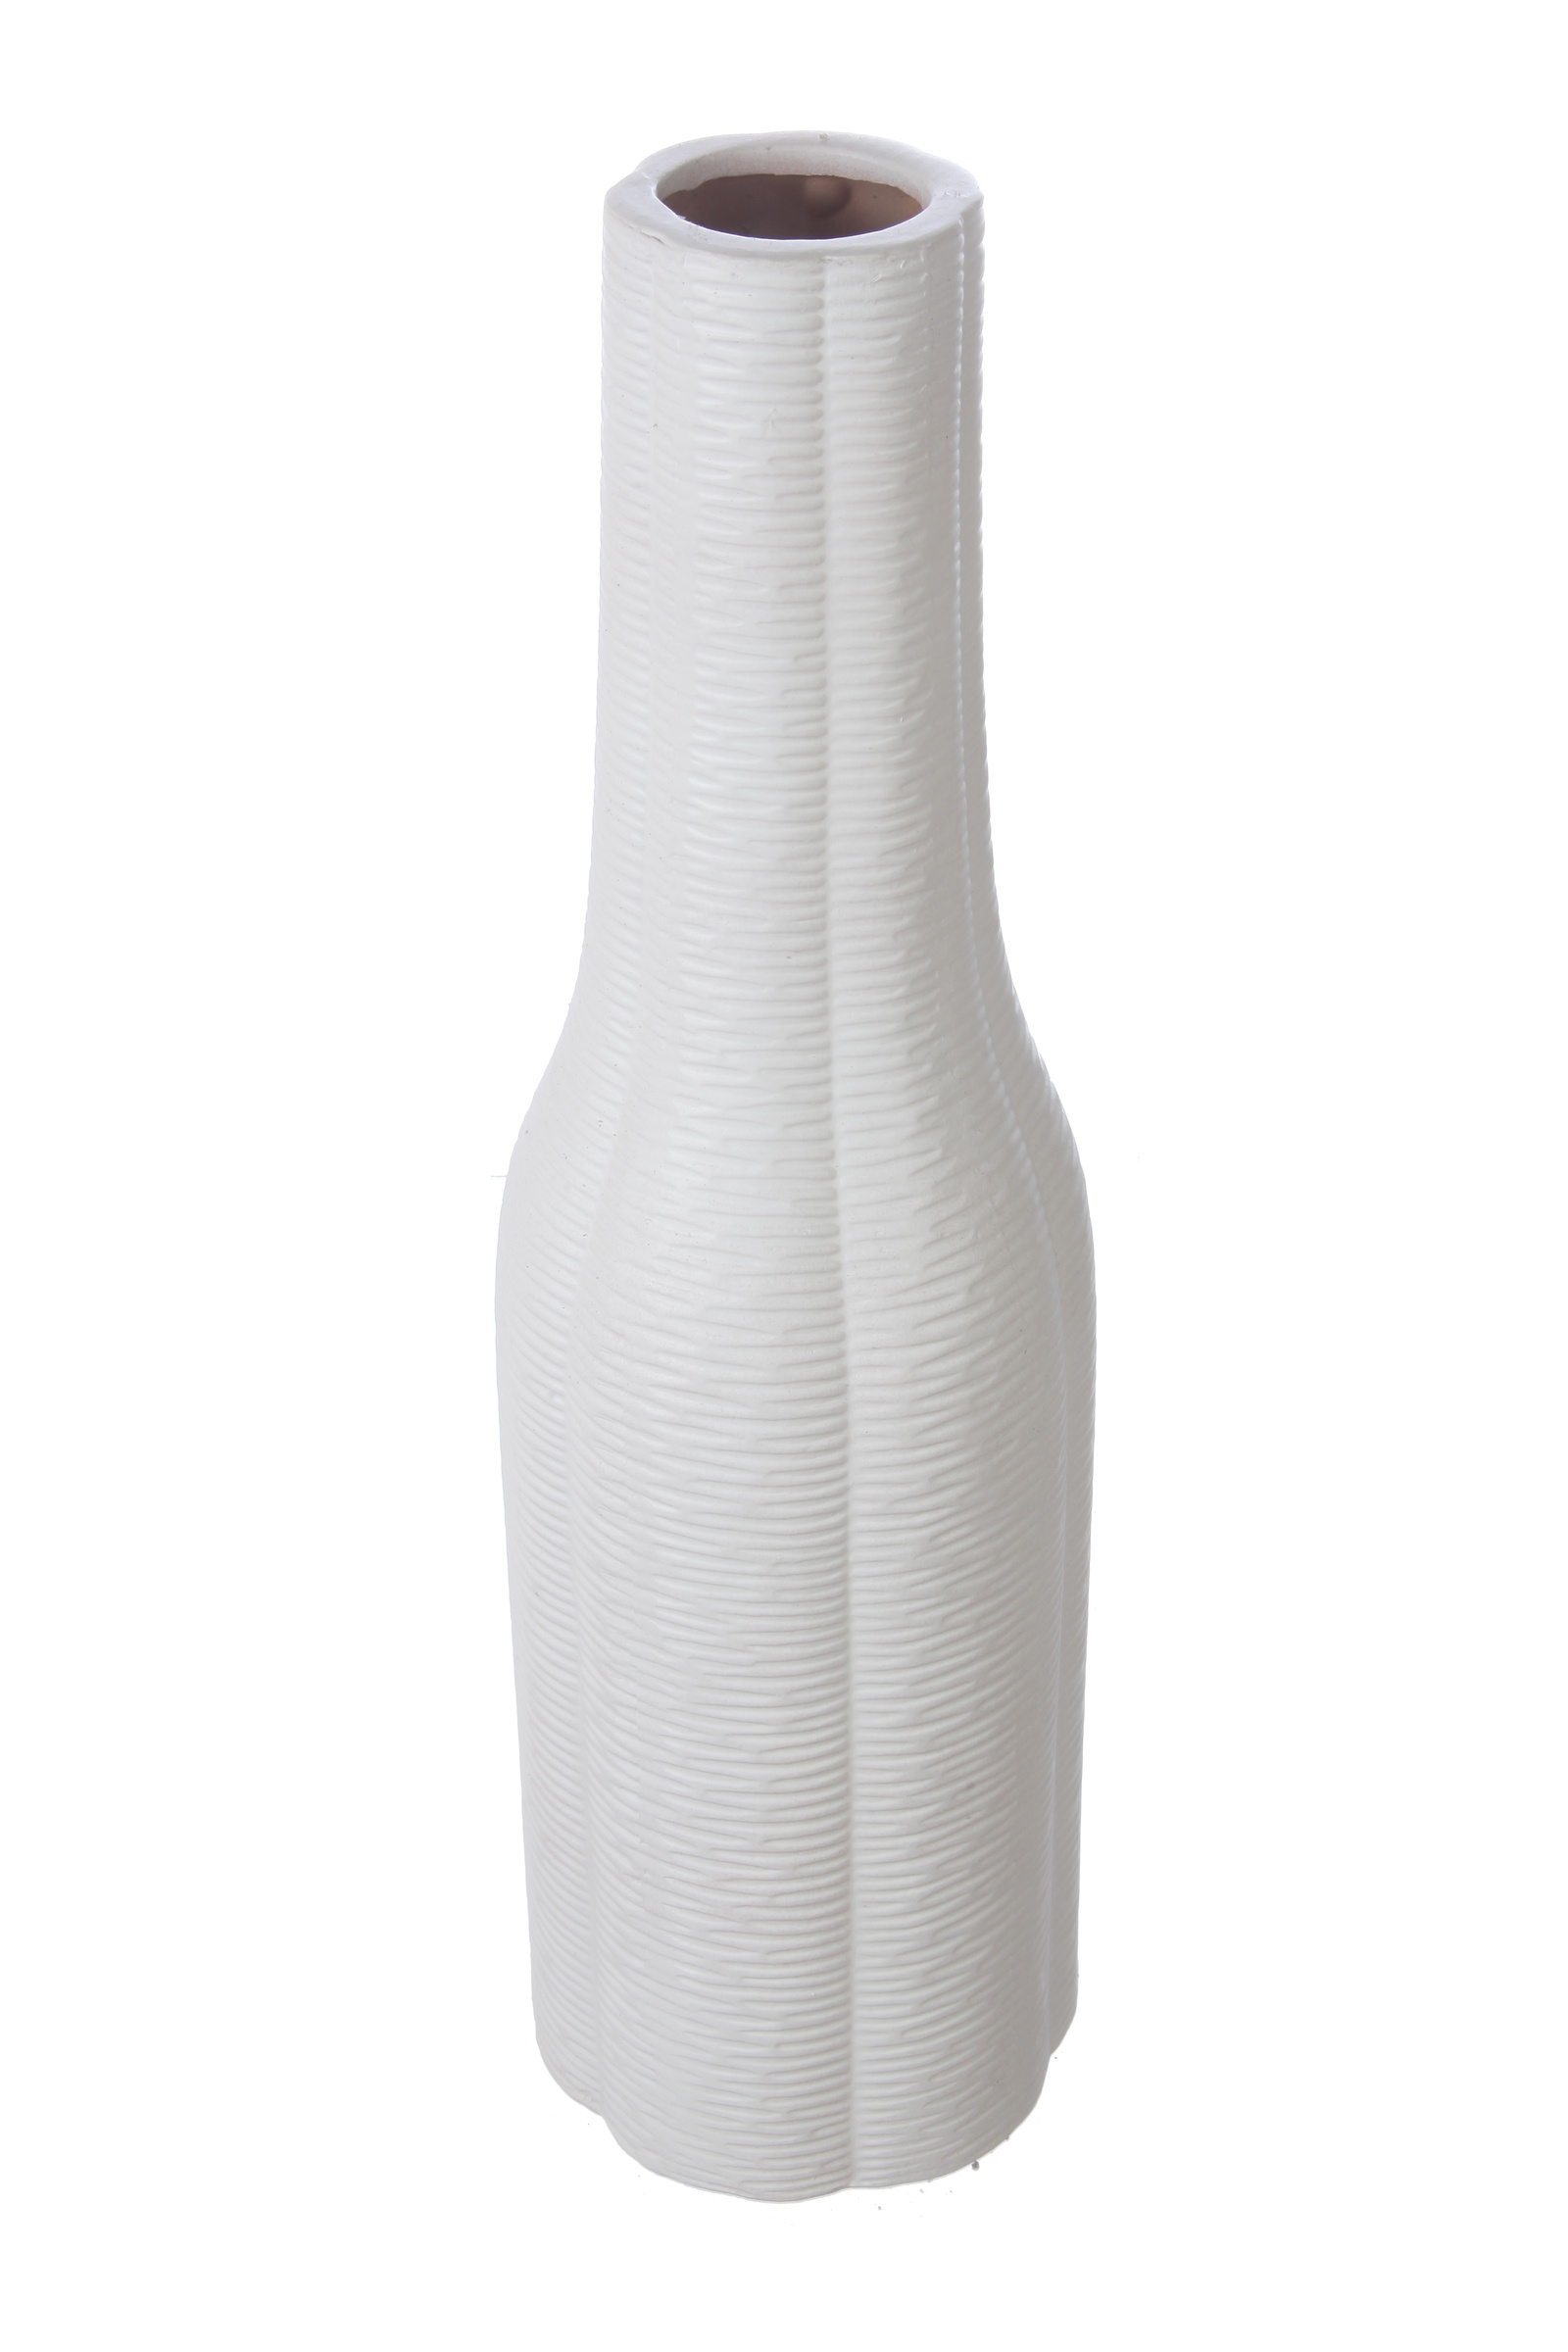 Ваза IsmatDecor Керамическая ваза, VB-95 белый, белый